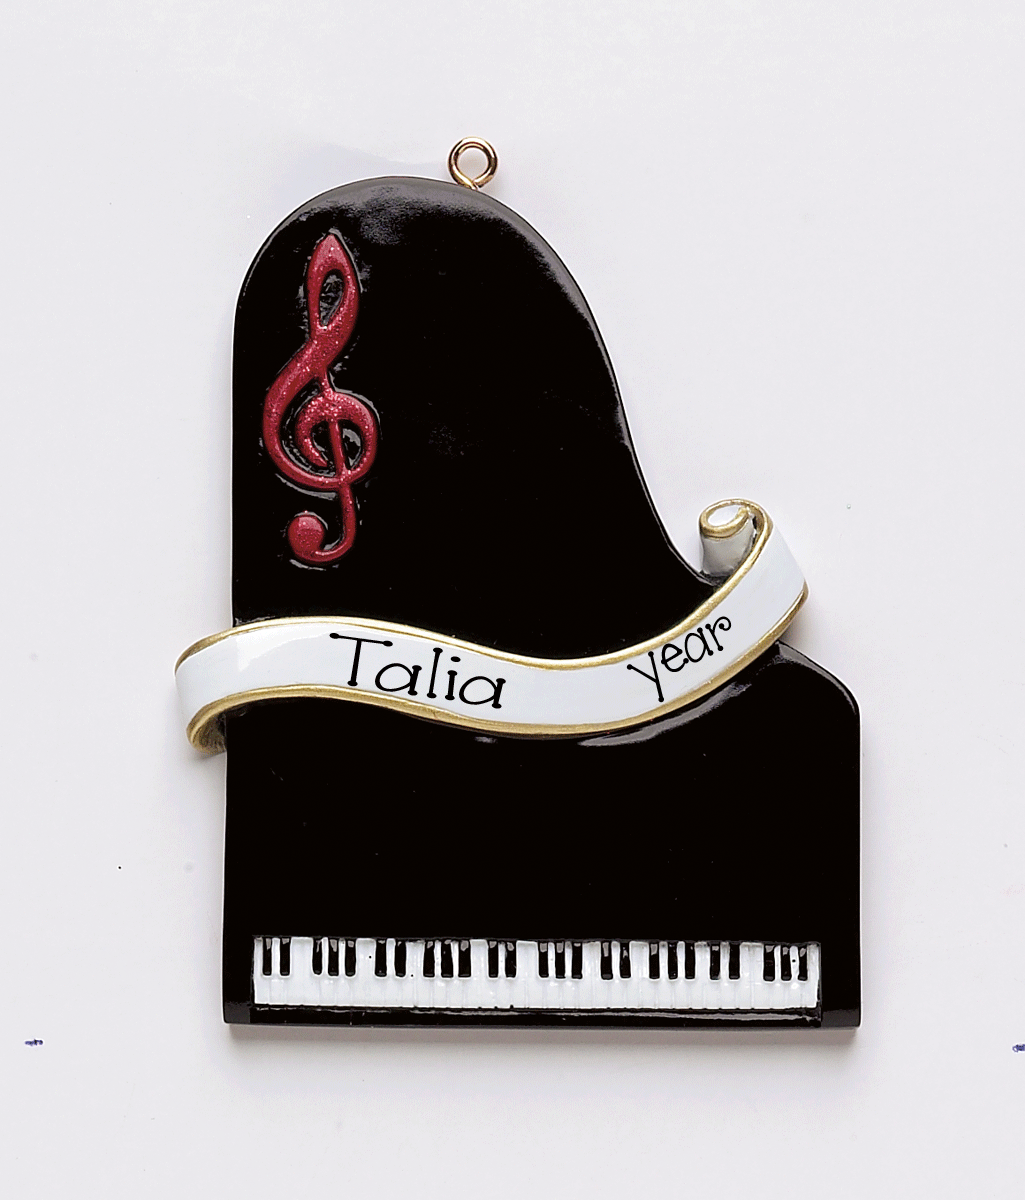 Piano Ornament, My Personalized Ornaments